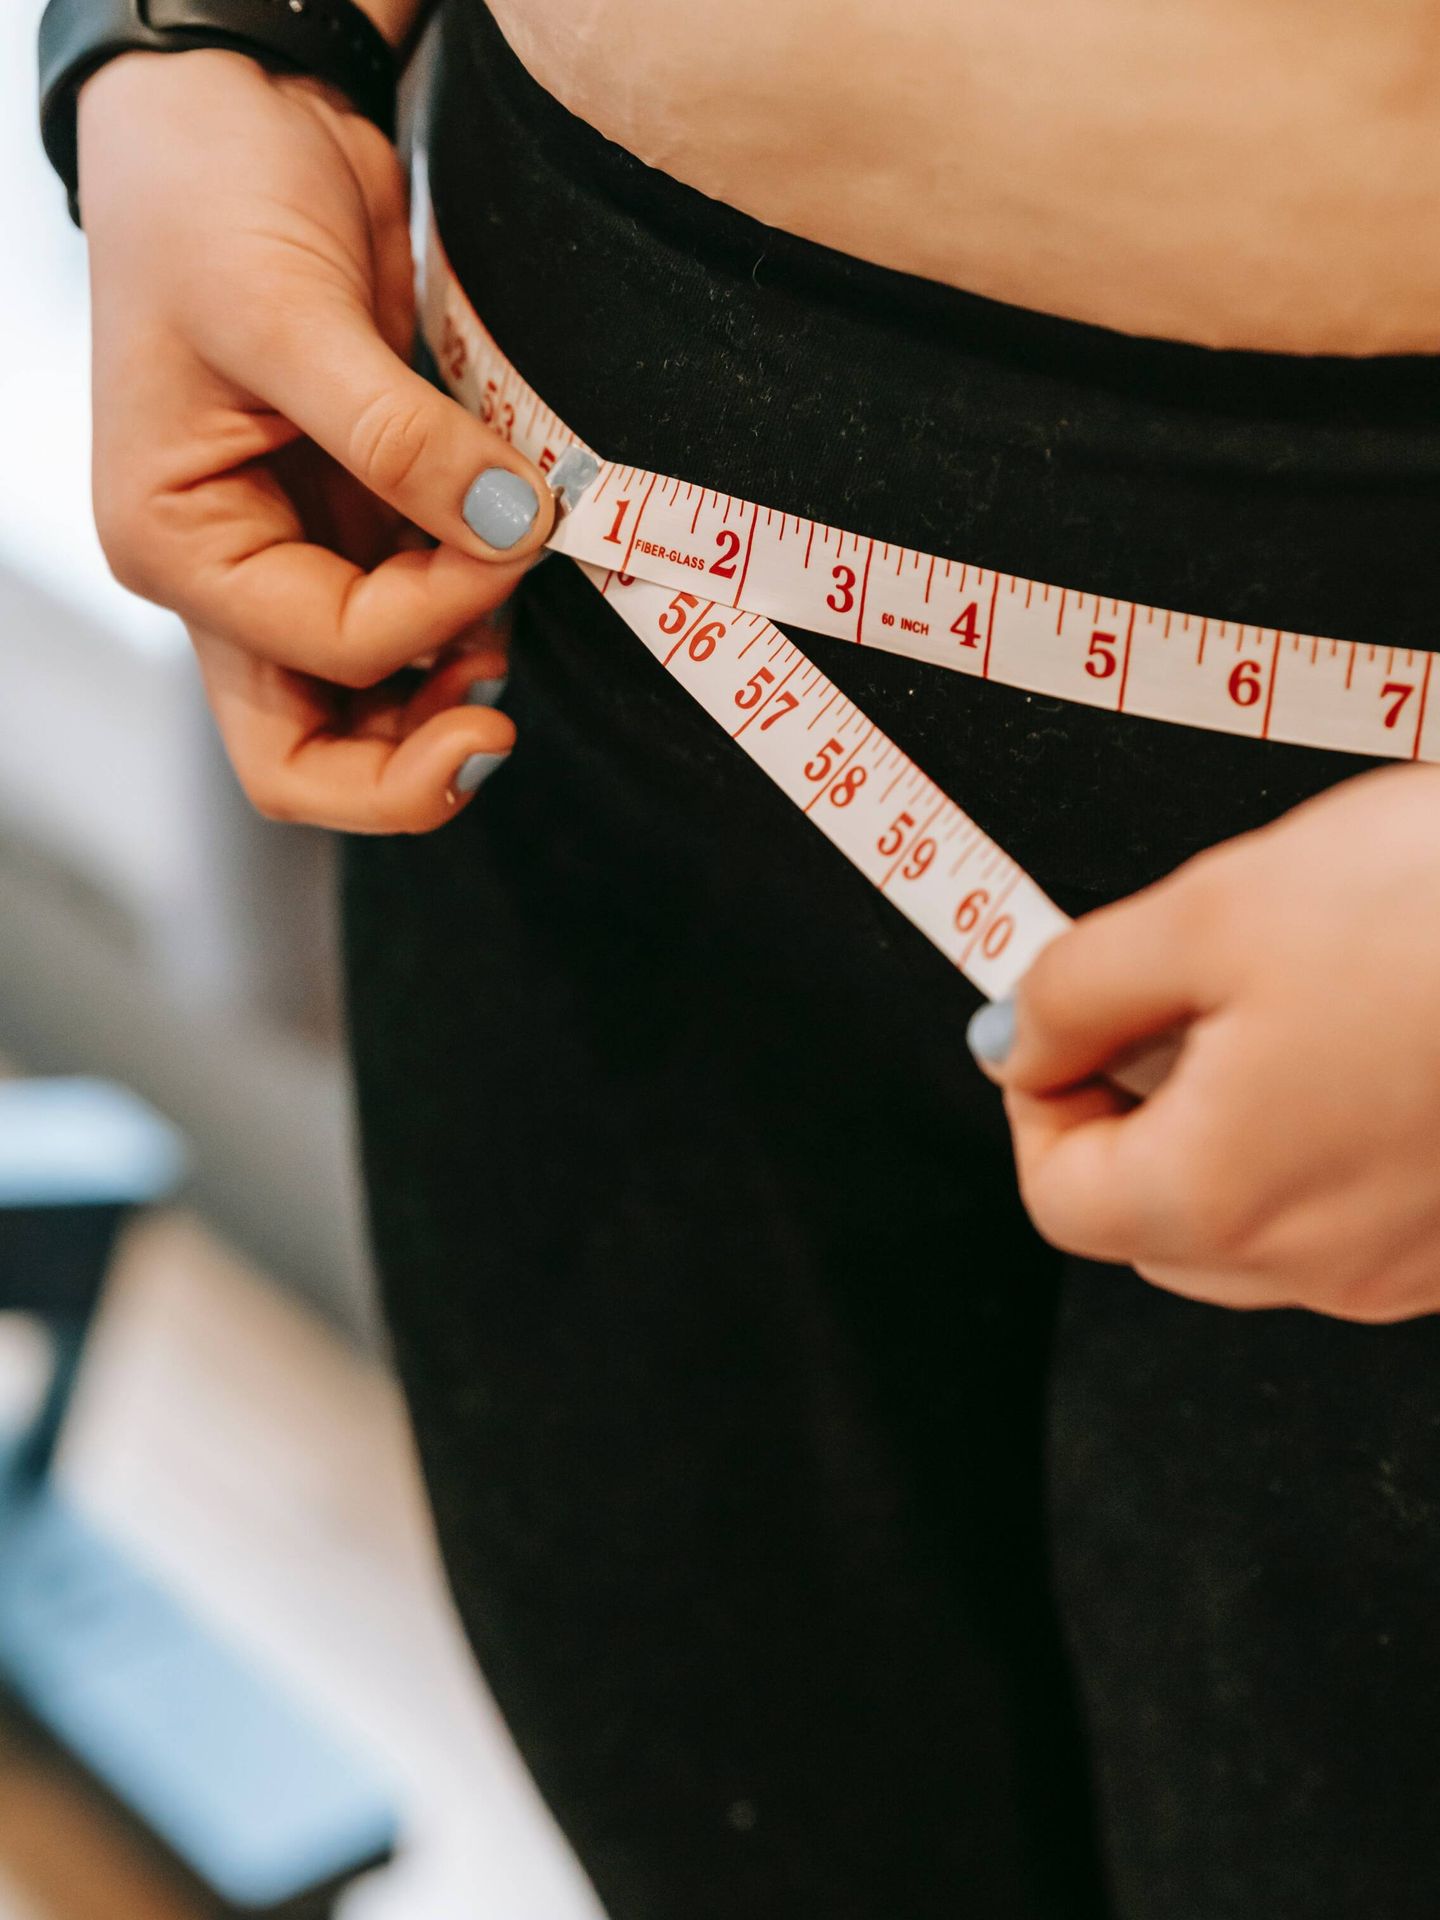 Los motivos que incitan la subida de peso durante la menopausia. (Pexels/Andres Ayrton)